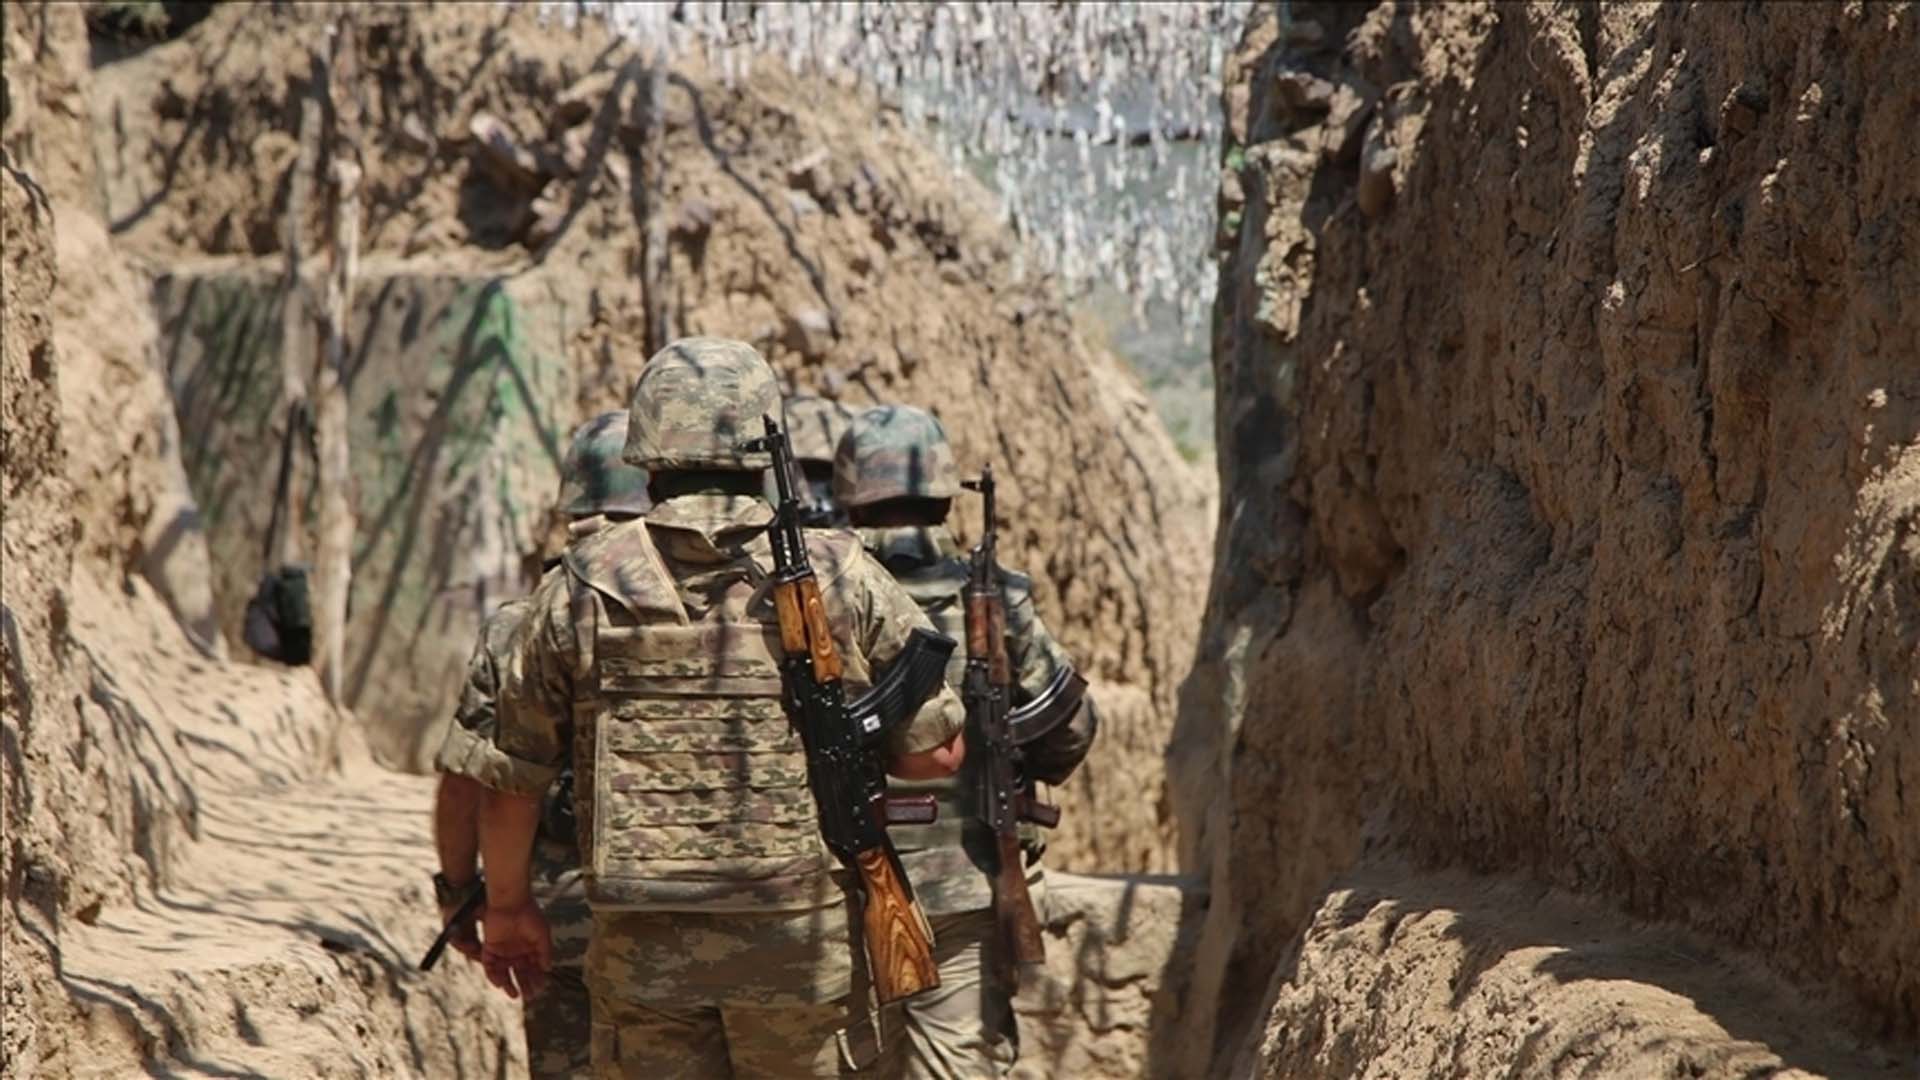 Son dakika: Azerbaycan'dan acı haber! Ermenistan ordusu ile çatışma çıktı: 7 asker şehit oldu, 10 asker yaralandı